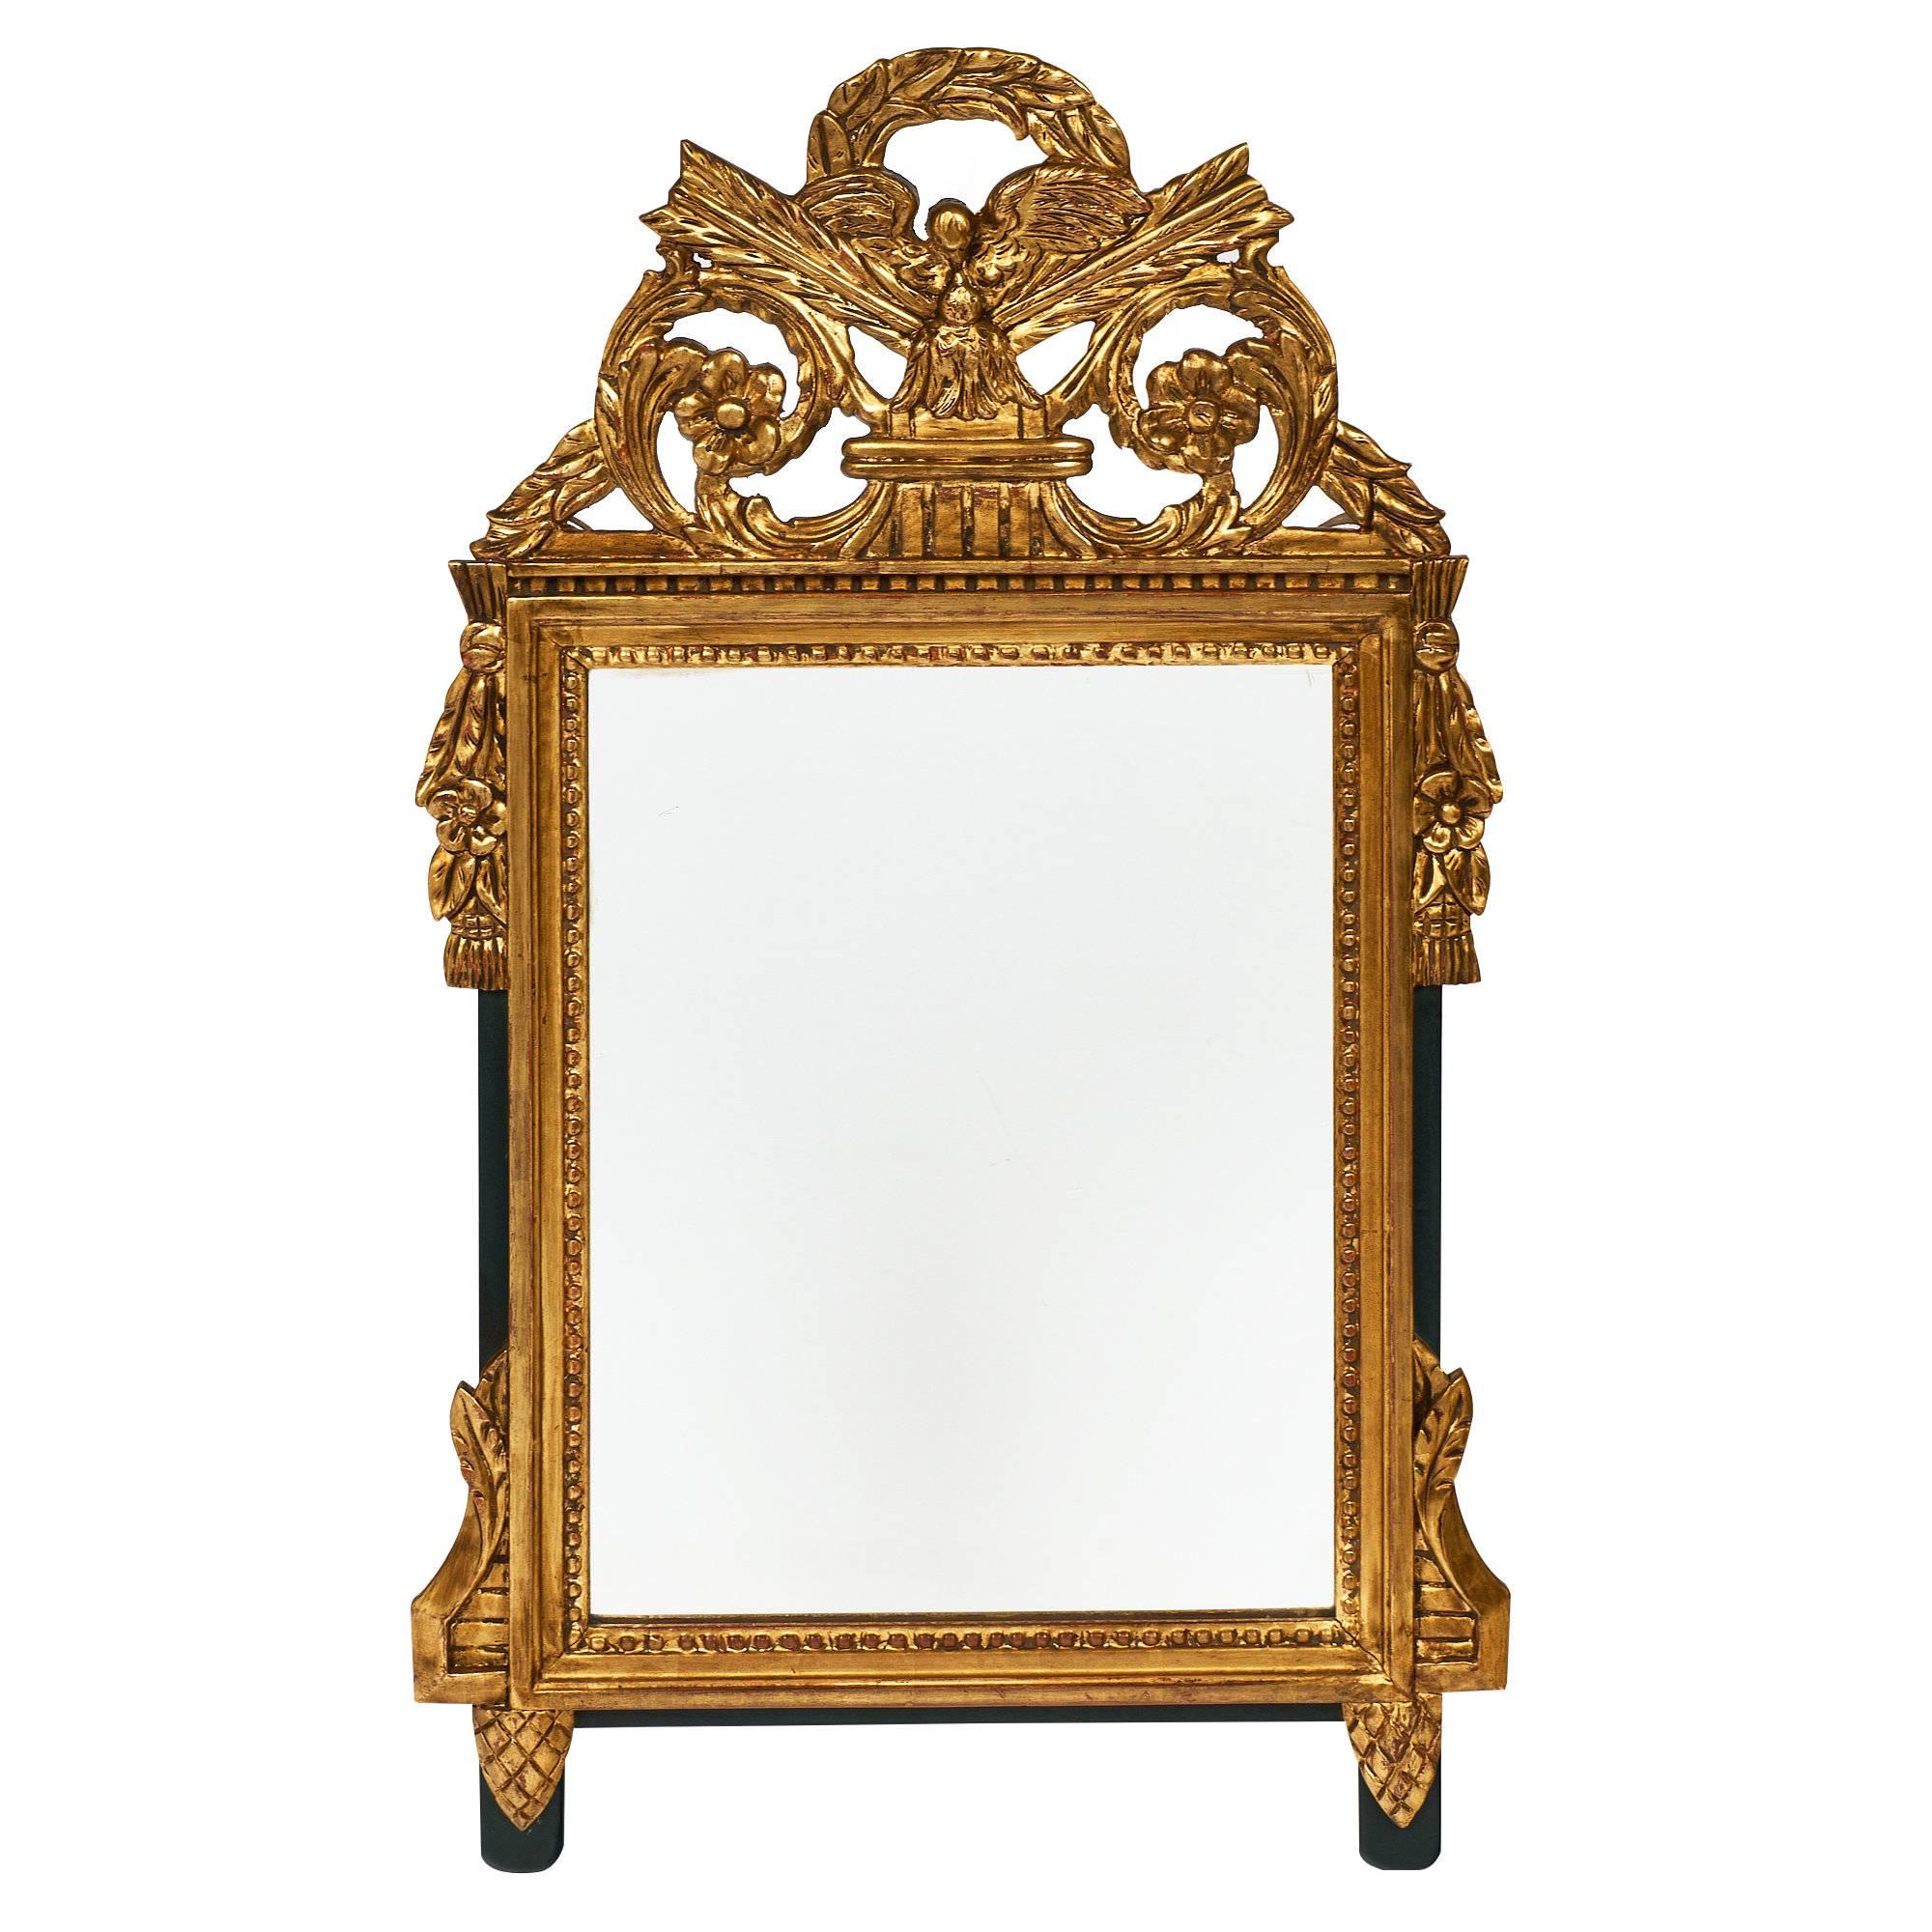 Antique Louis XVI Style Mirror